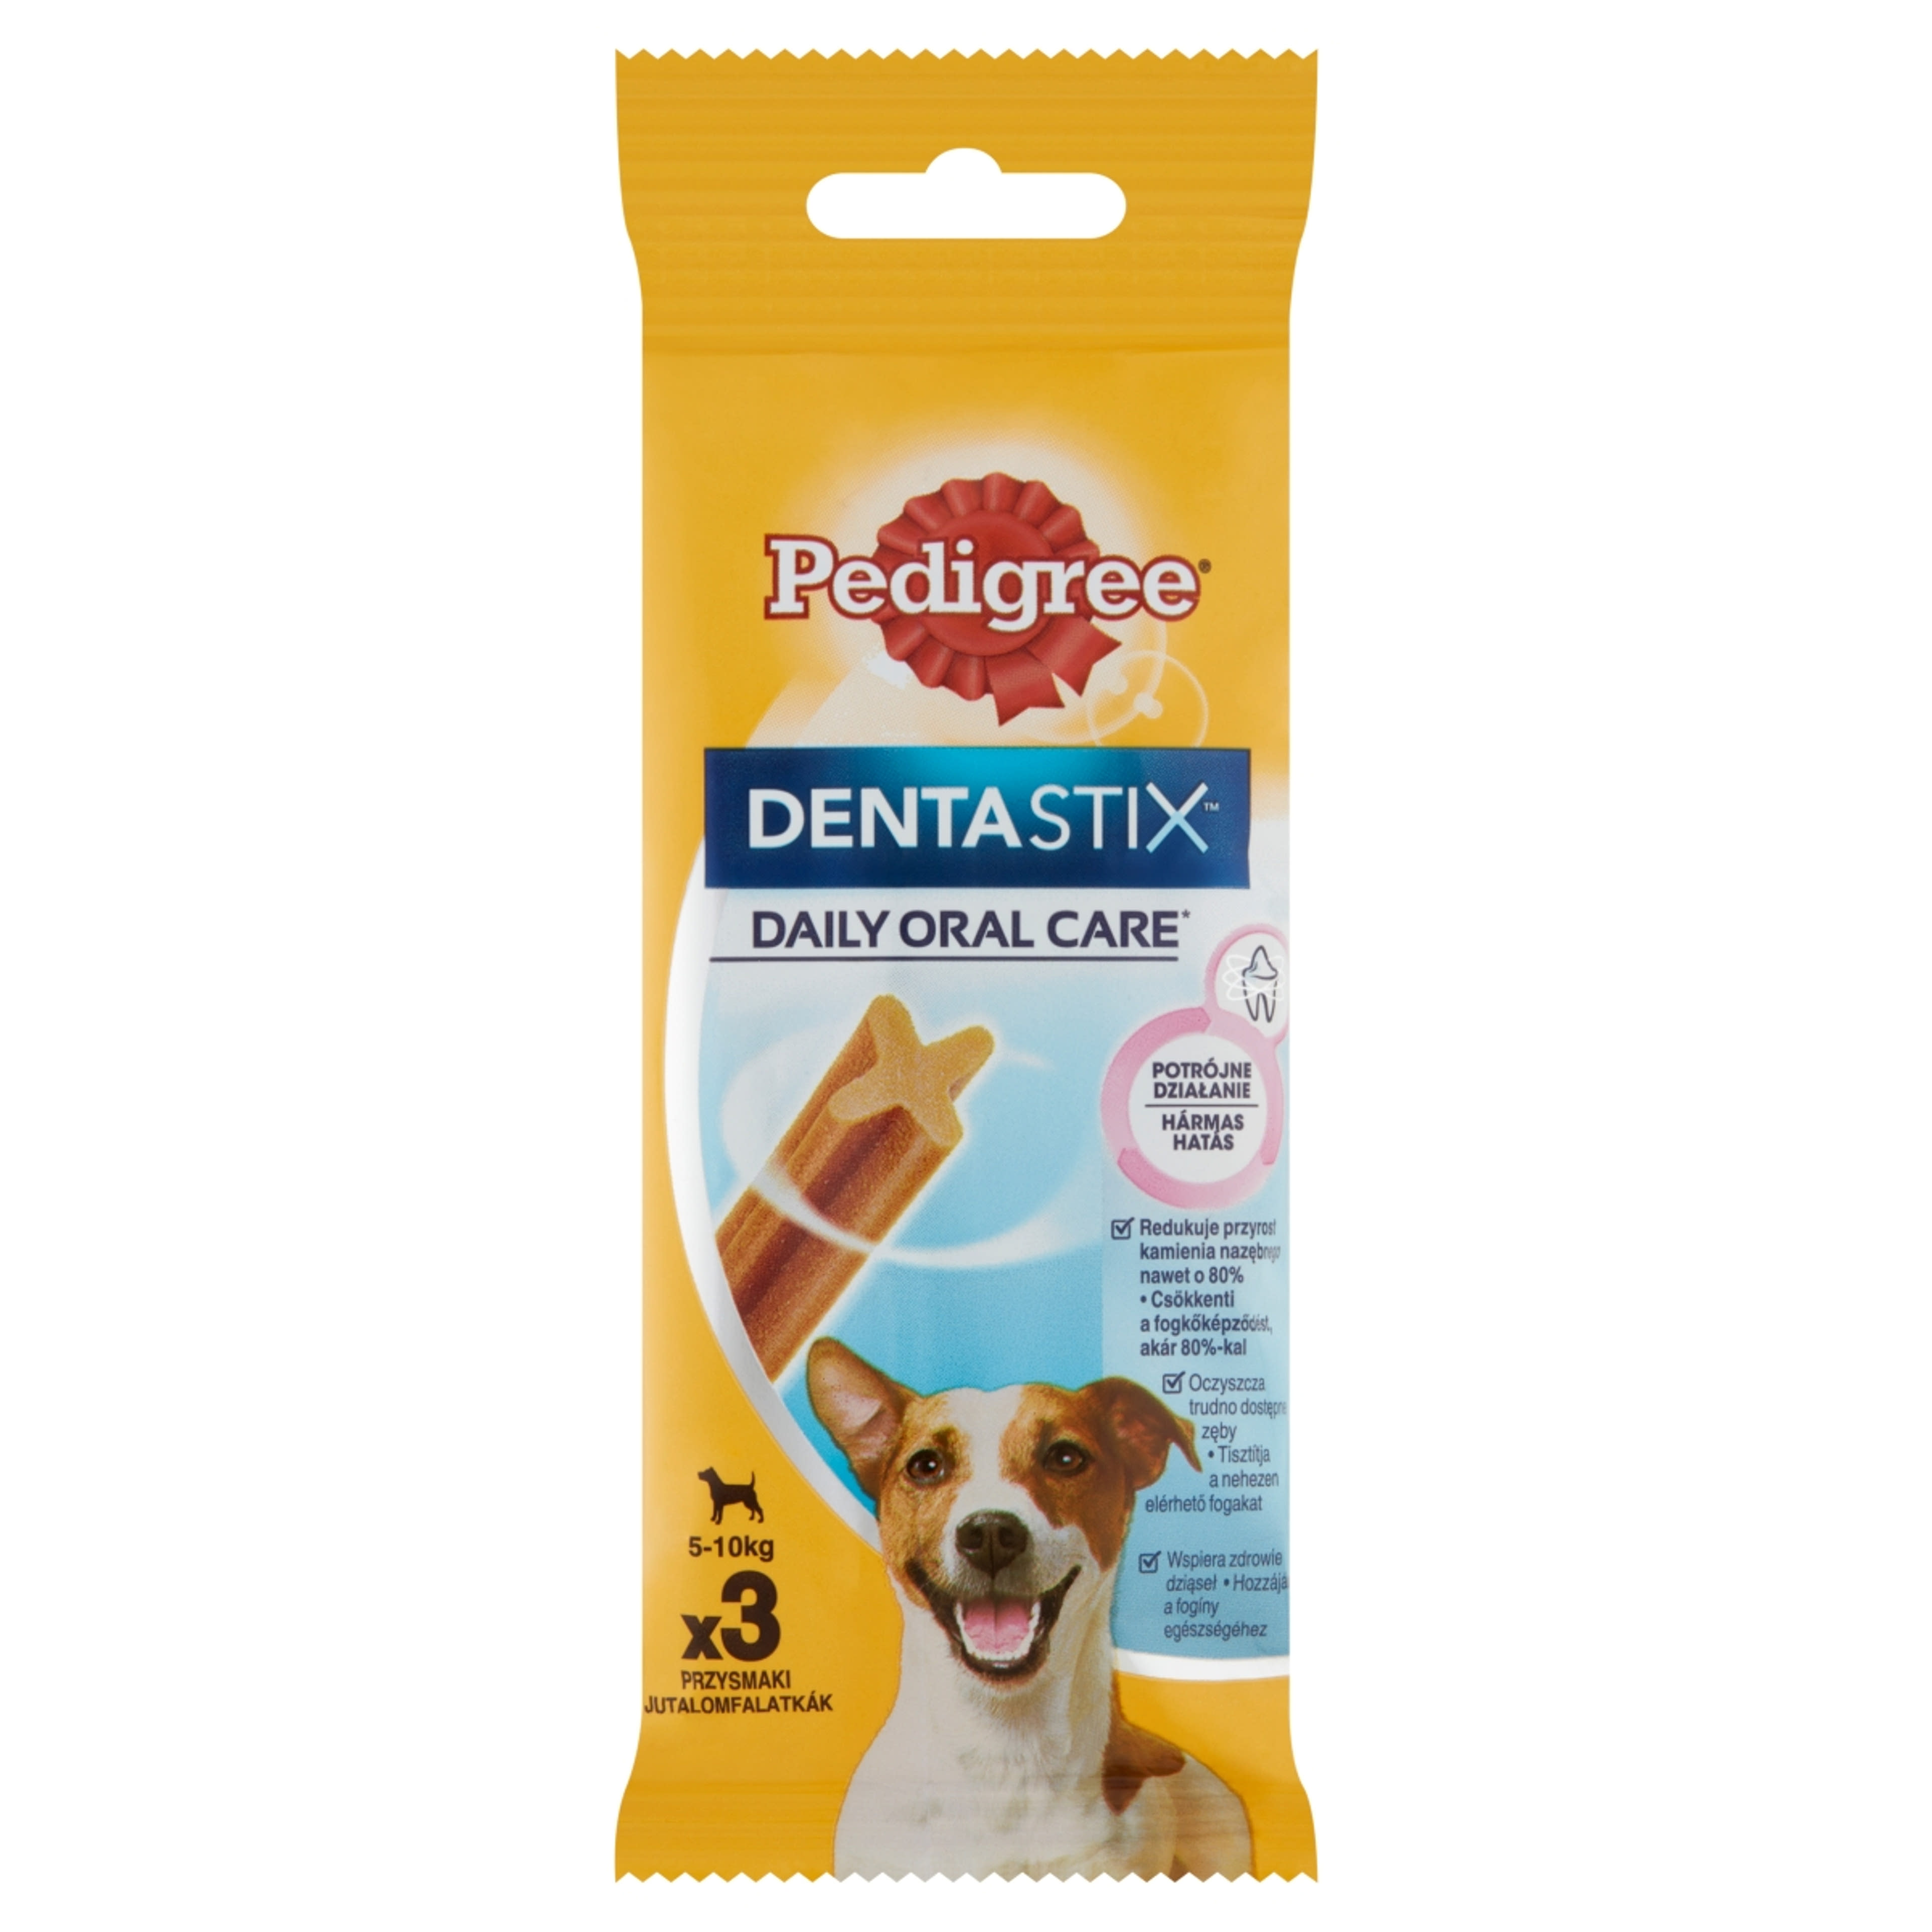 Pedigree DentaStix kistestű és 4 hónapnál idősebb kiegészítő szárazeledel kutyáknak, 3 db - 45 g-1